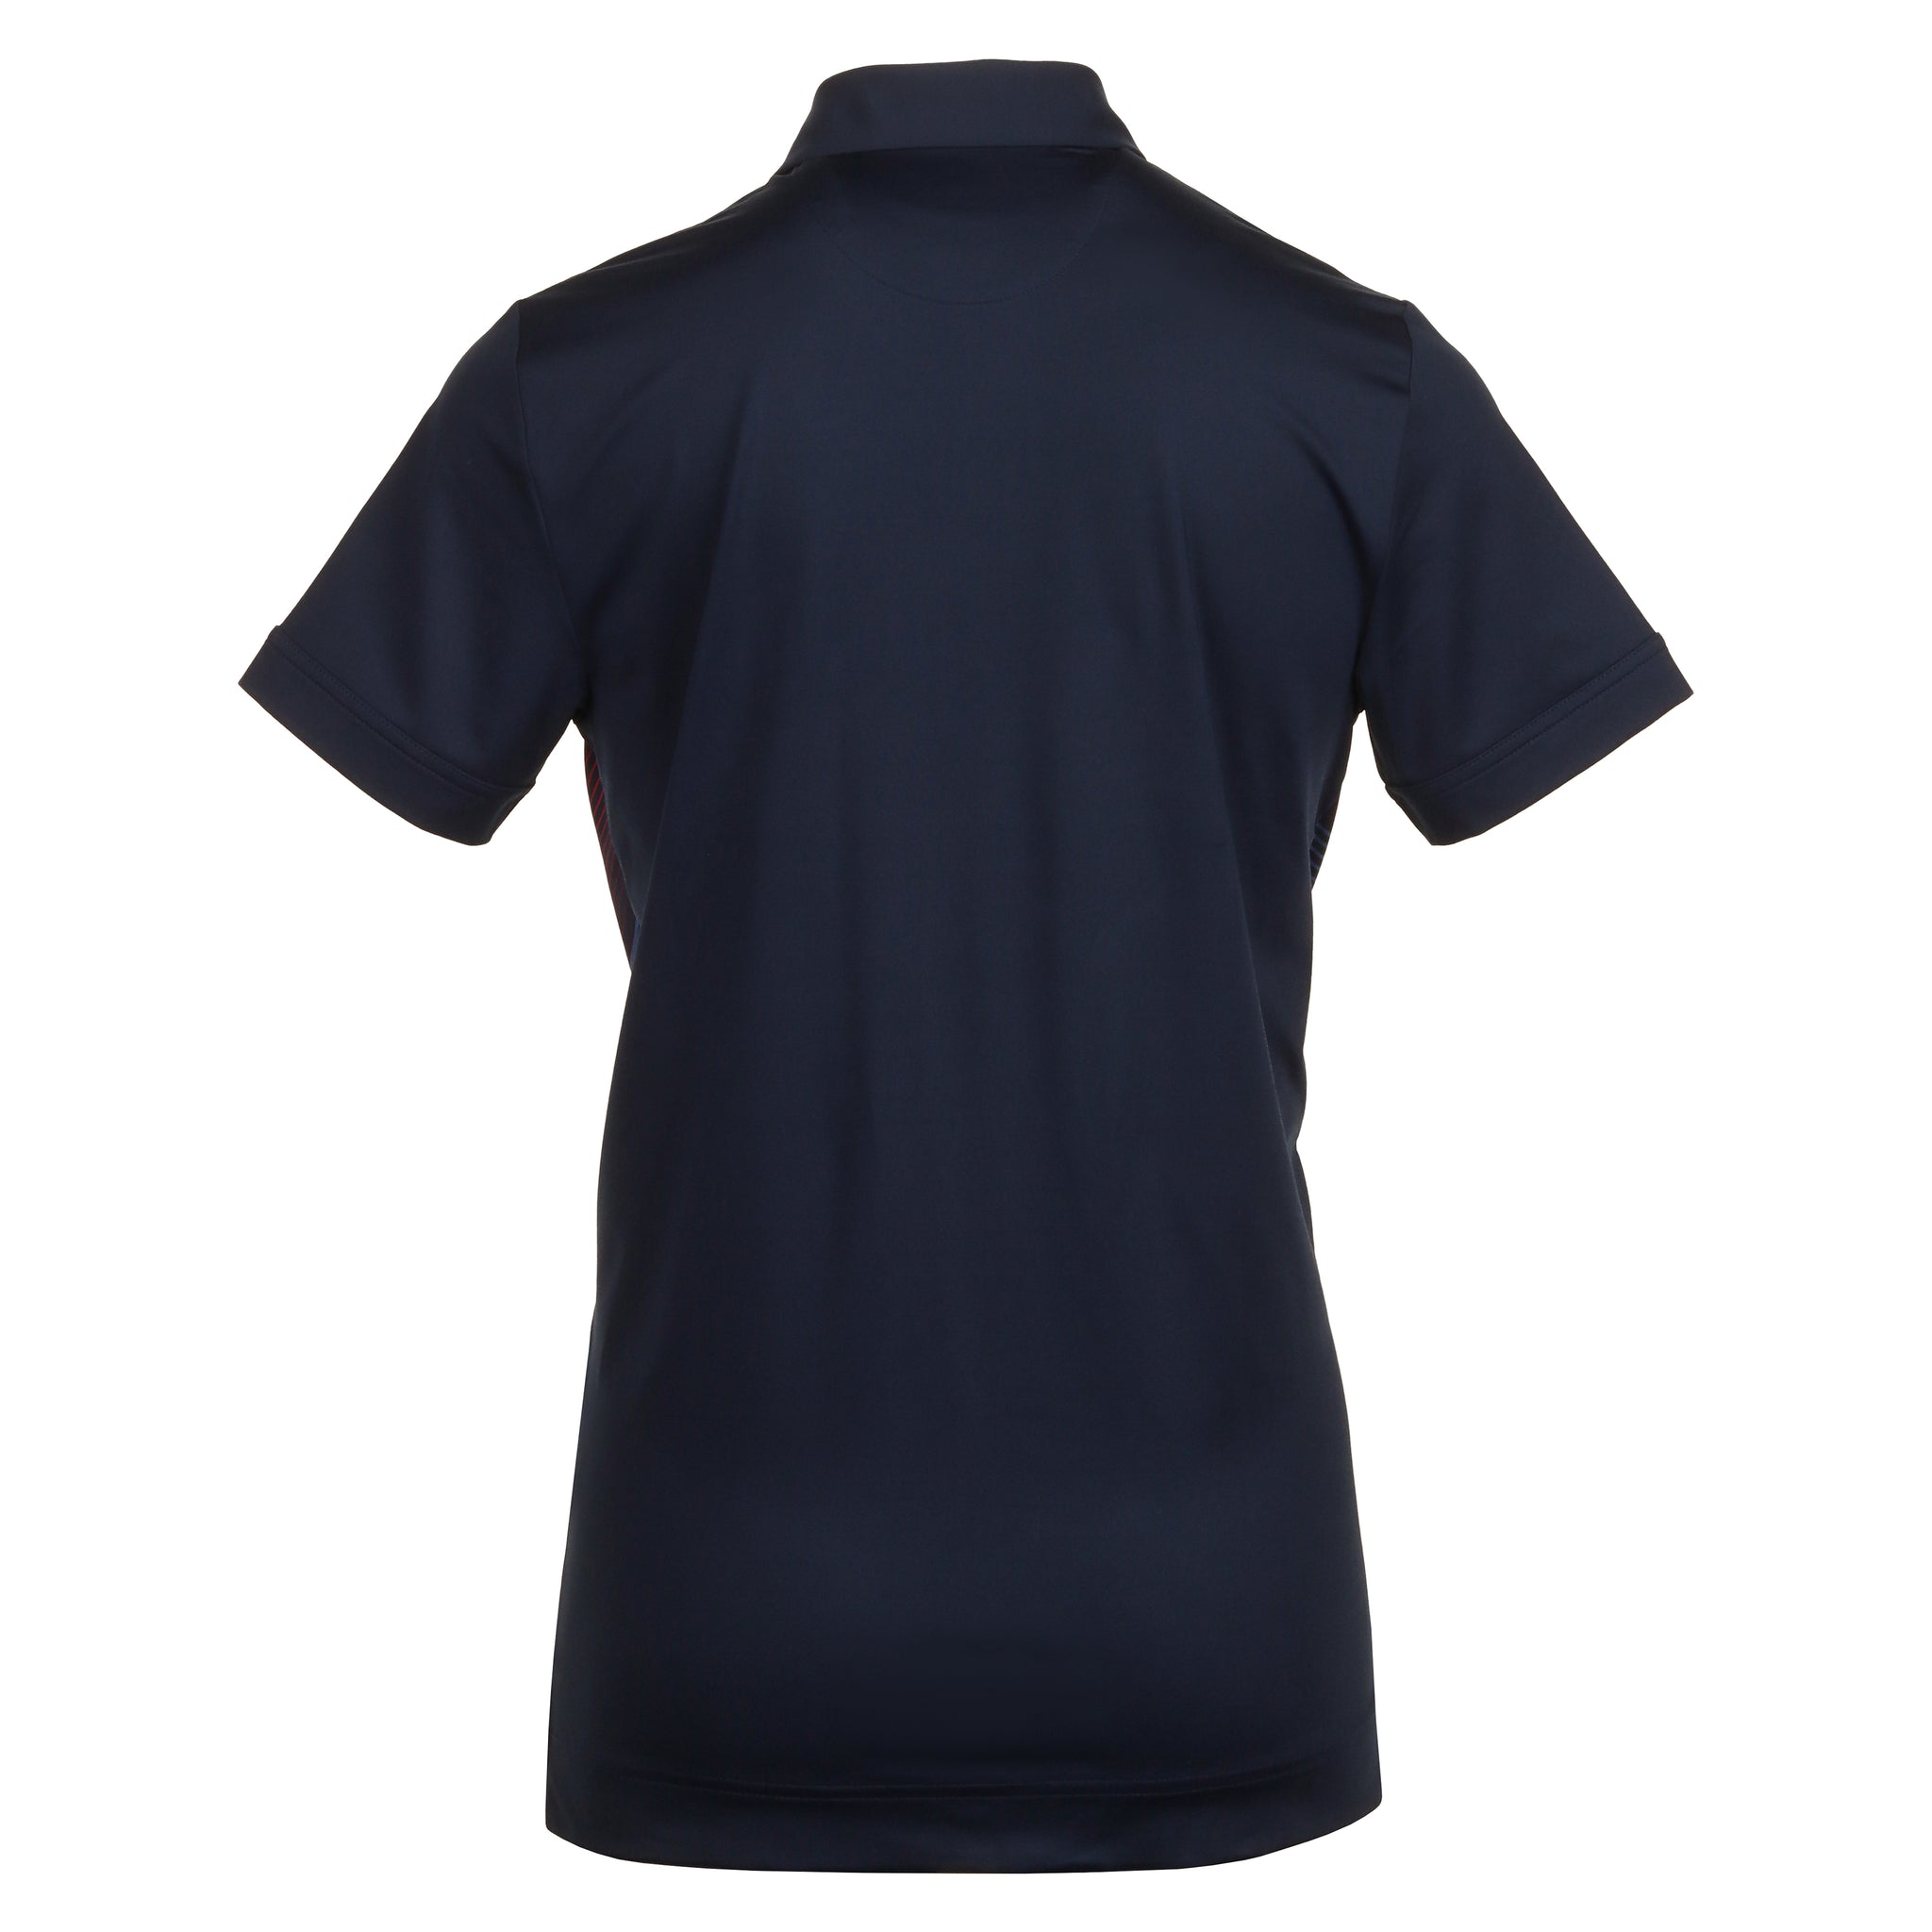 Callaway Golf X-Series Linear Chev Shirt